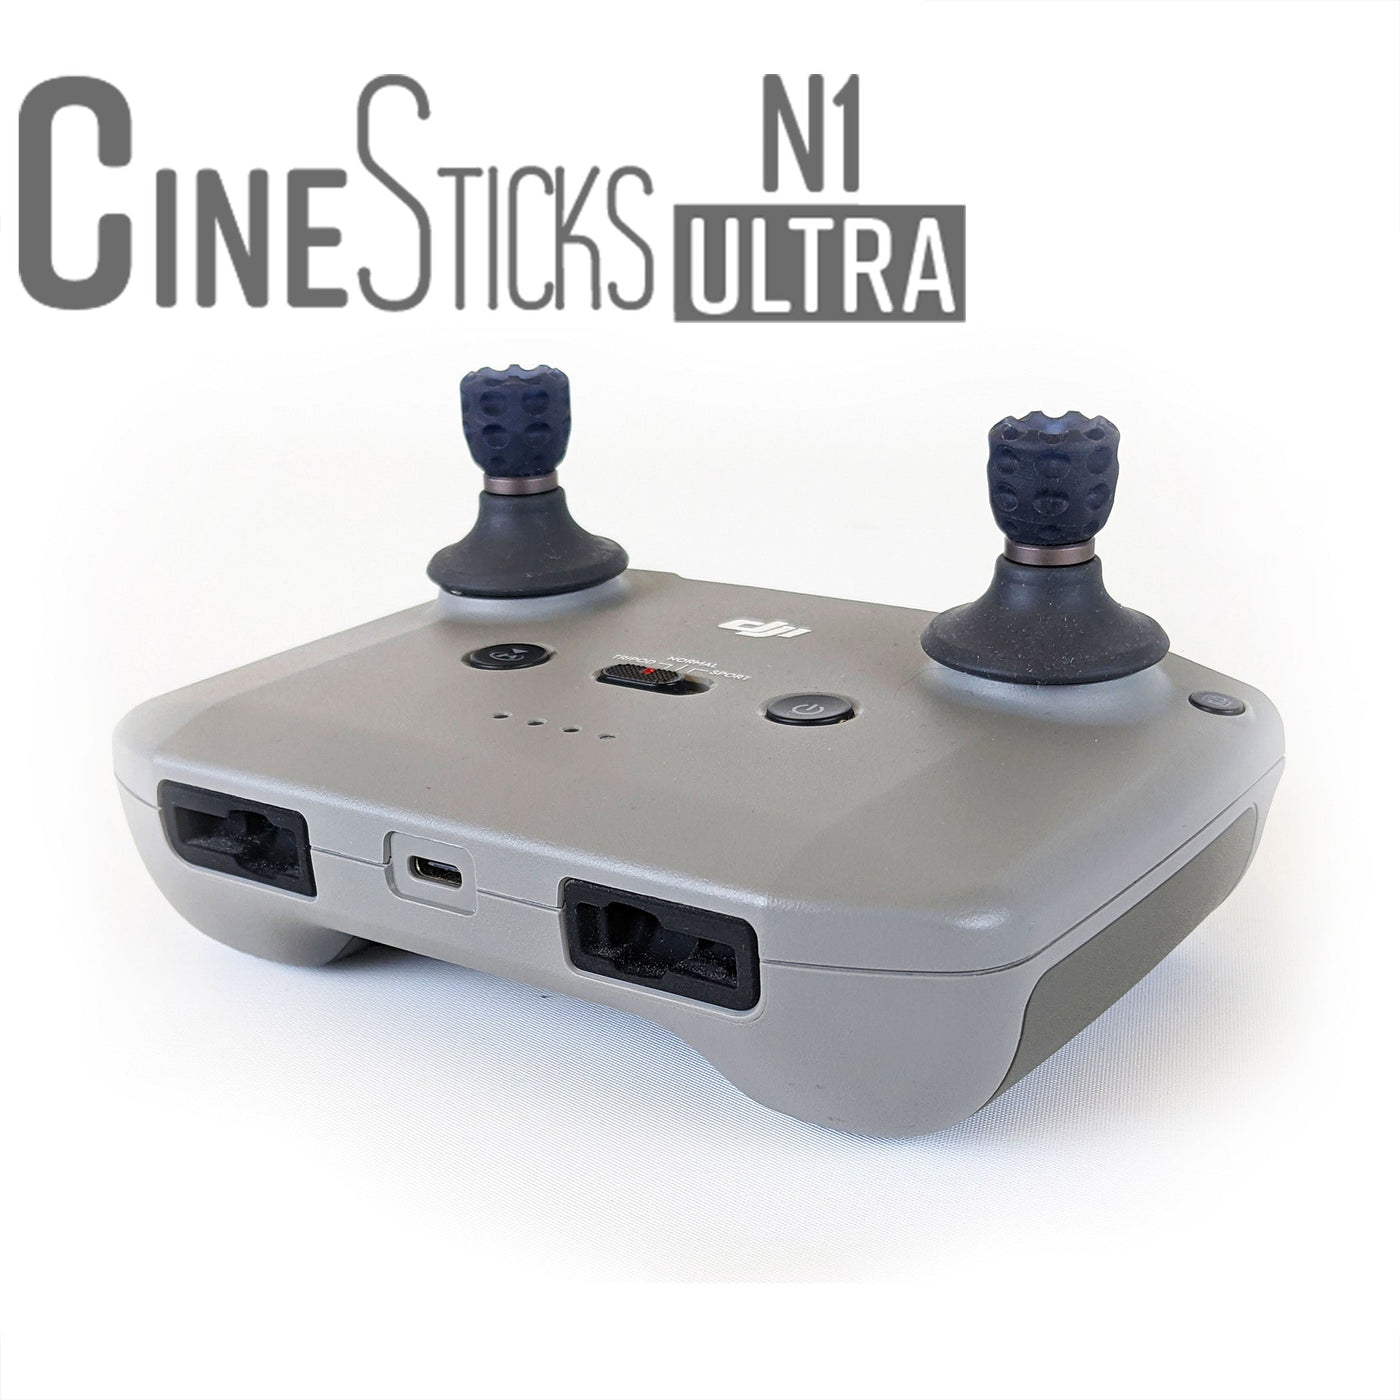 CineSticks N1 Ultra - Regno Unito